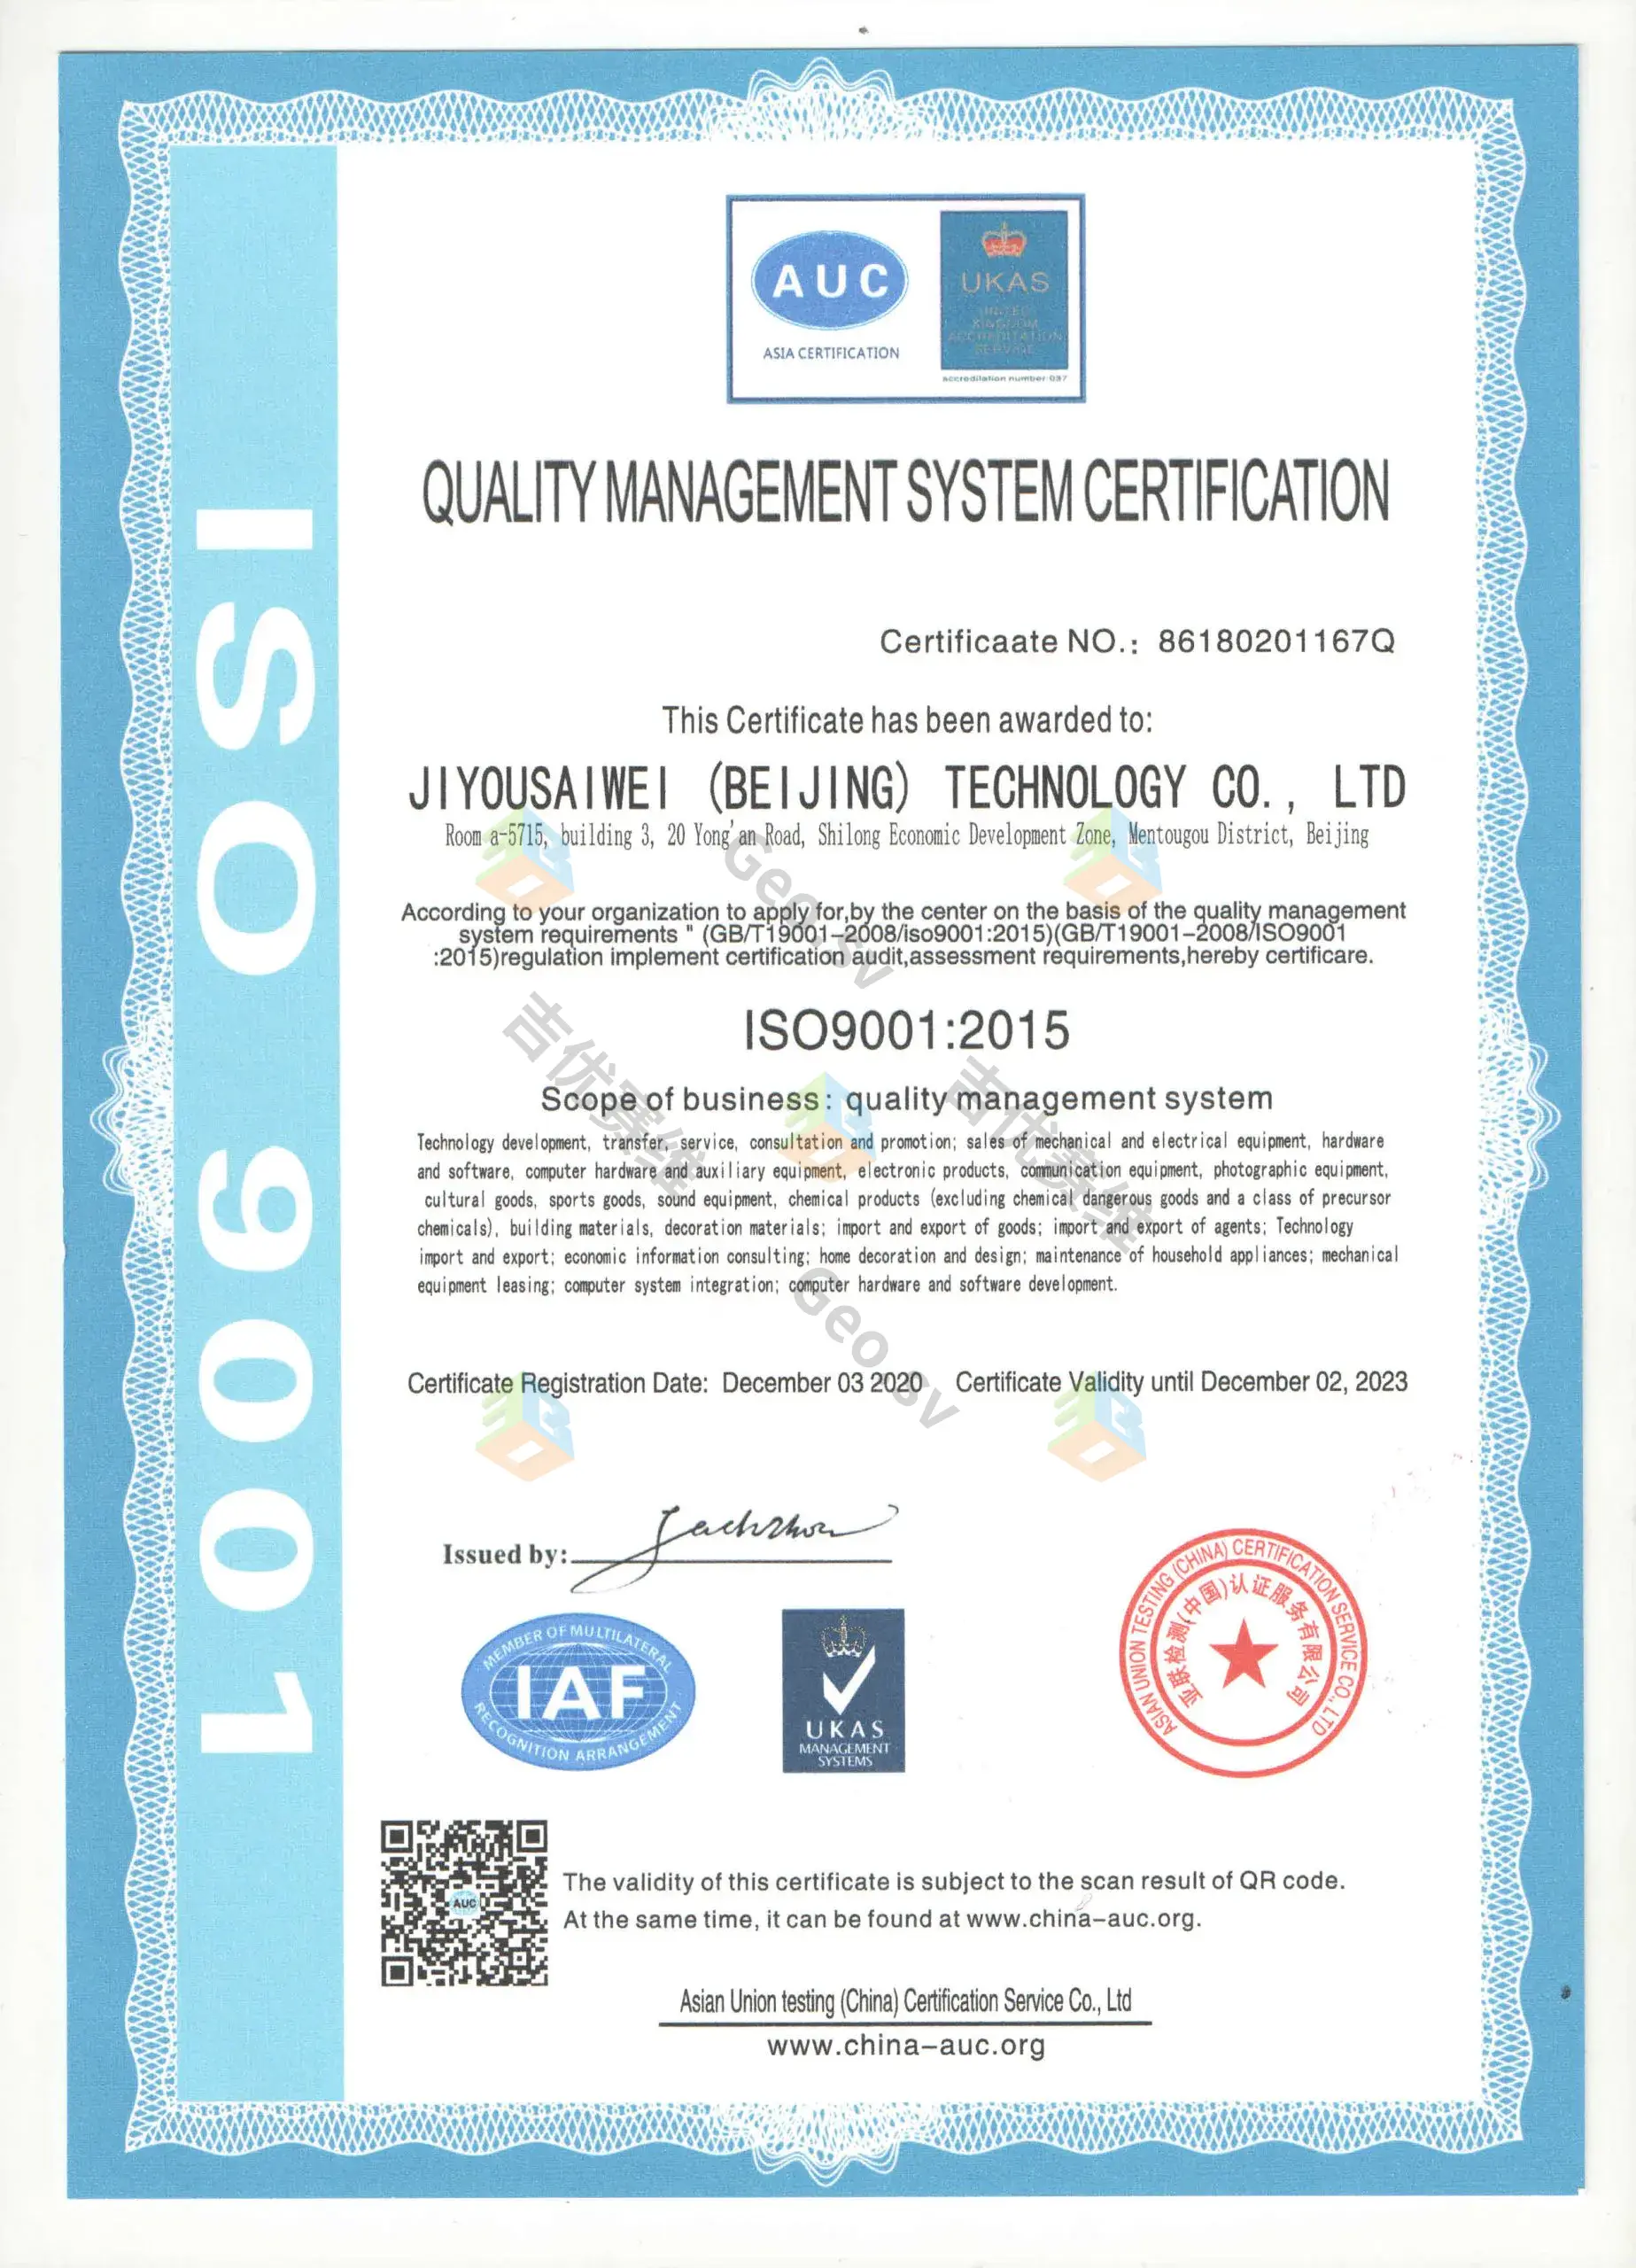 喜讯!热烈祝贺我公司获得质量管理体系认证证书ISO9001